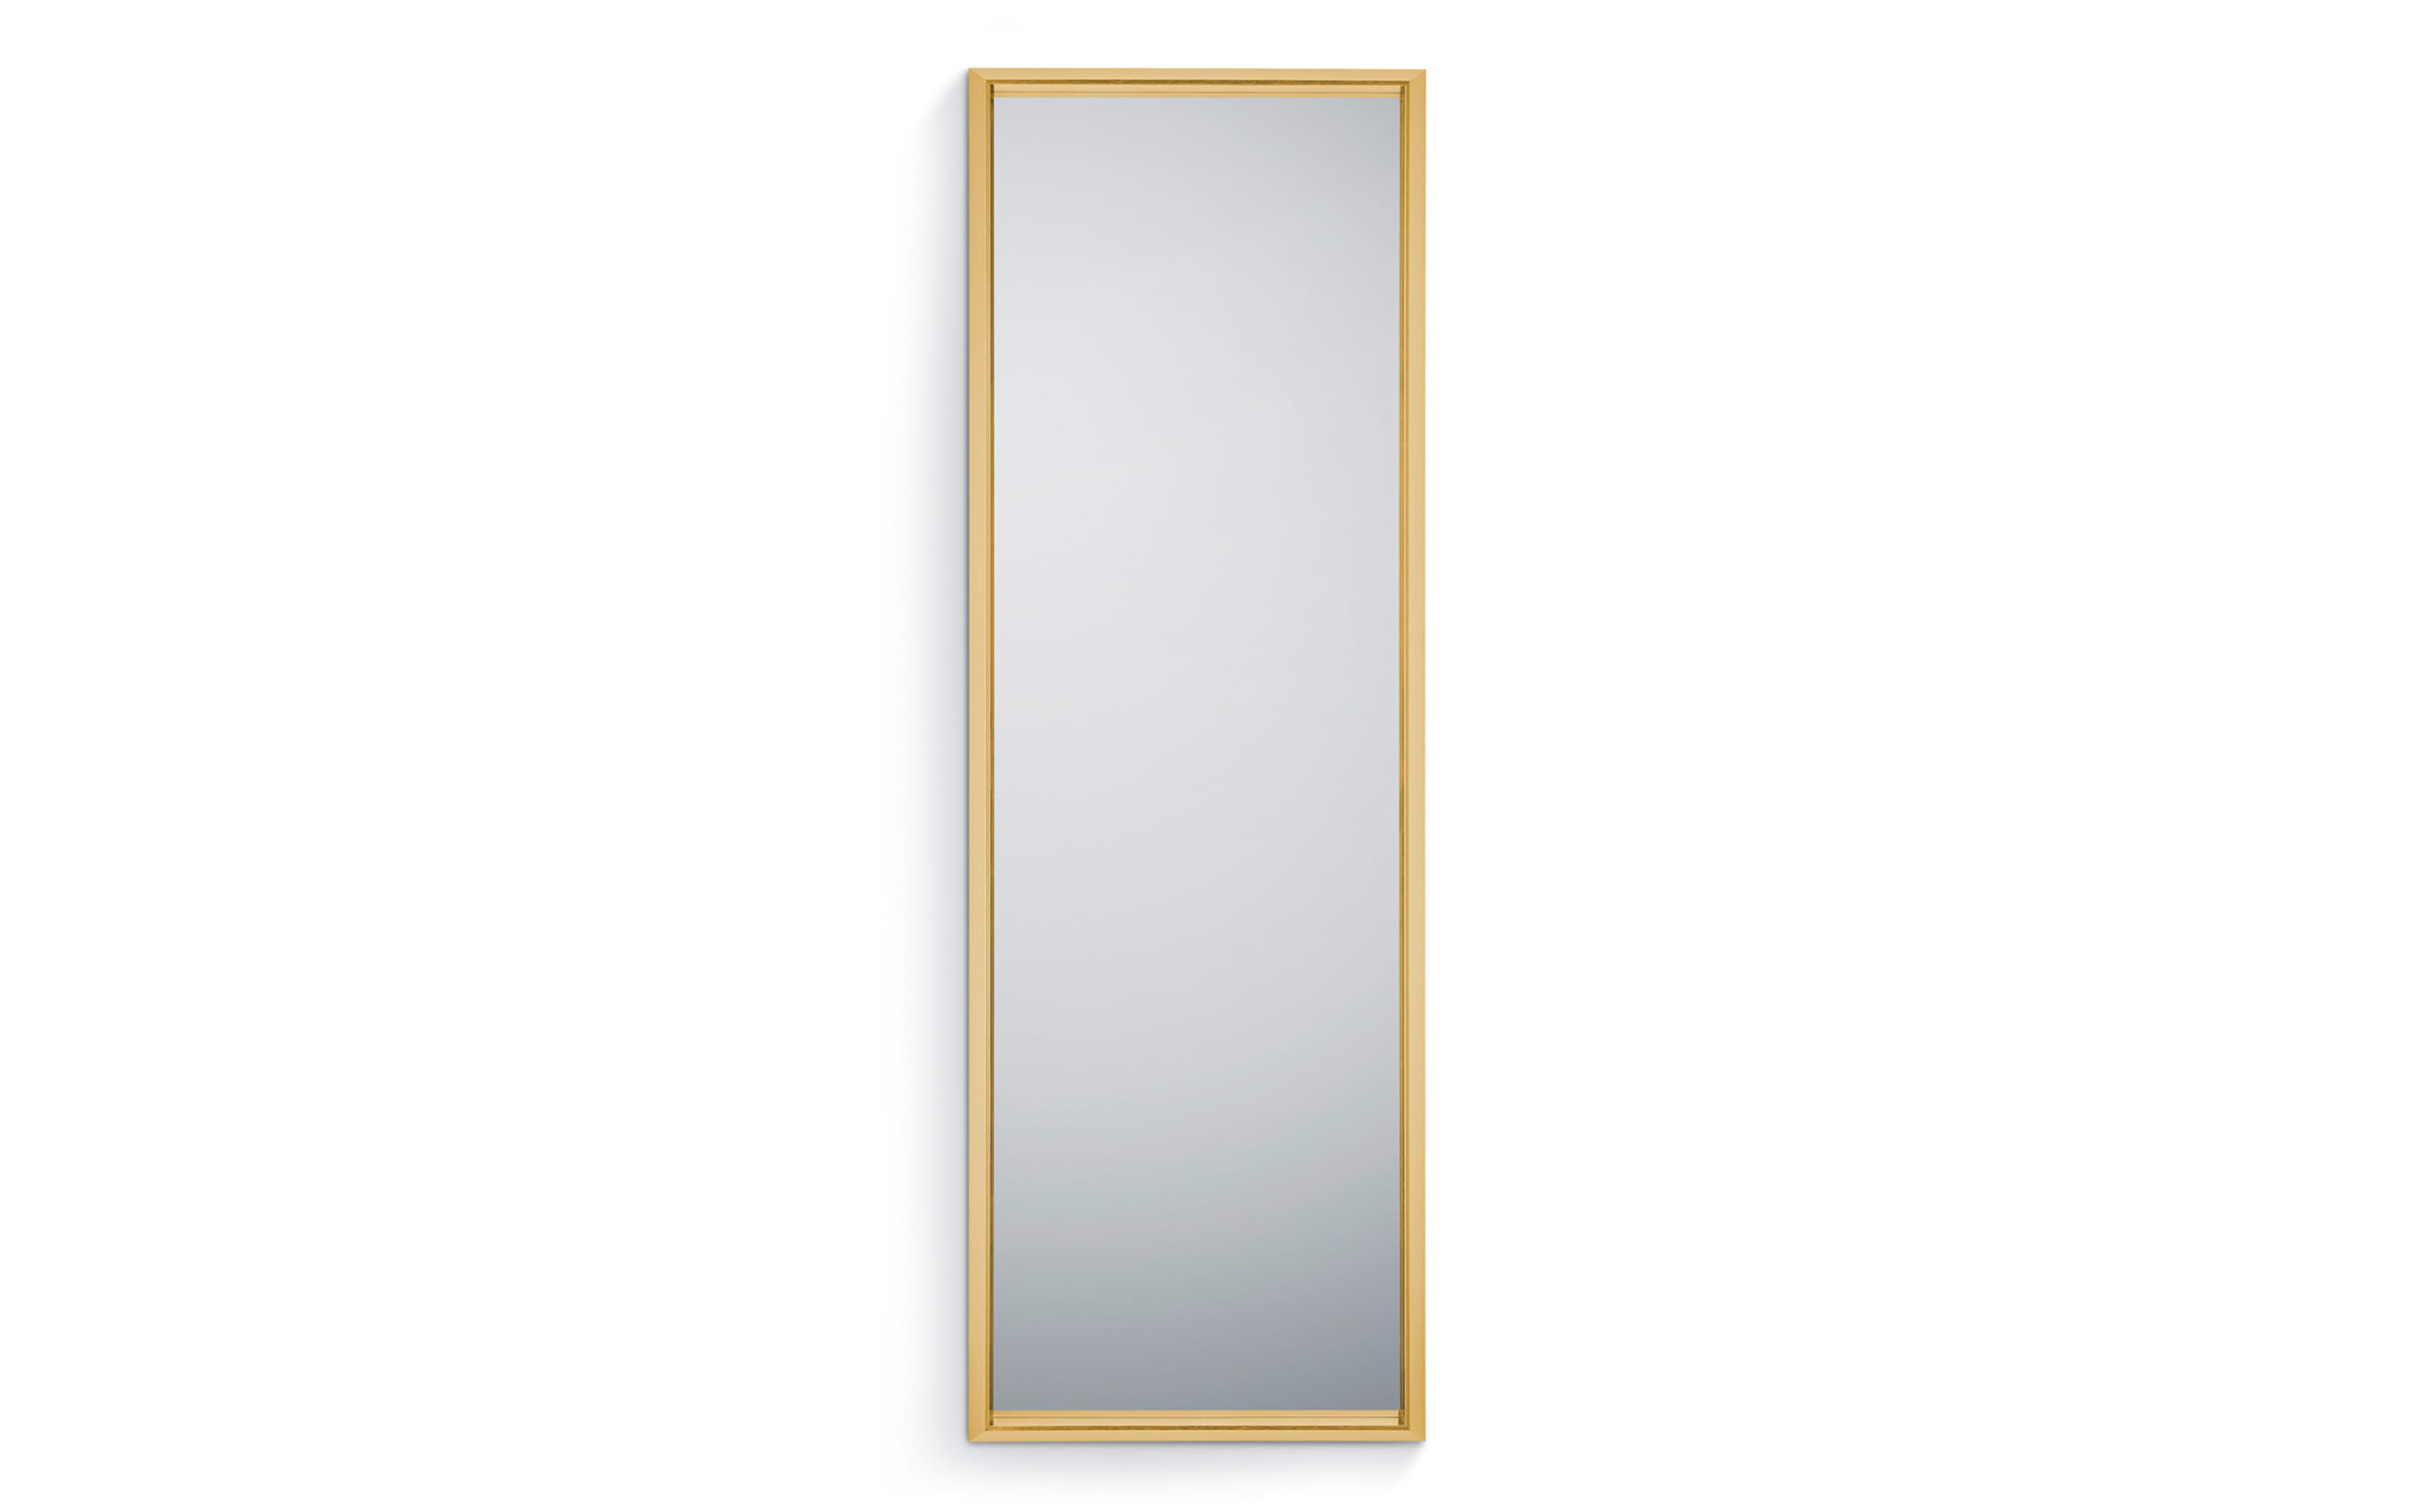 Rahmenspiegel Melli, goldfarbig, 50 x 150 cm